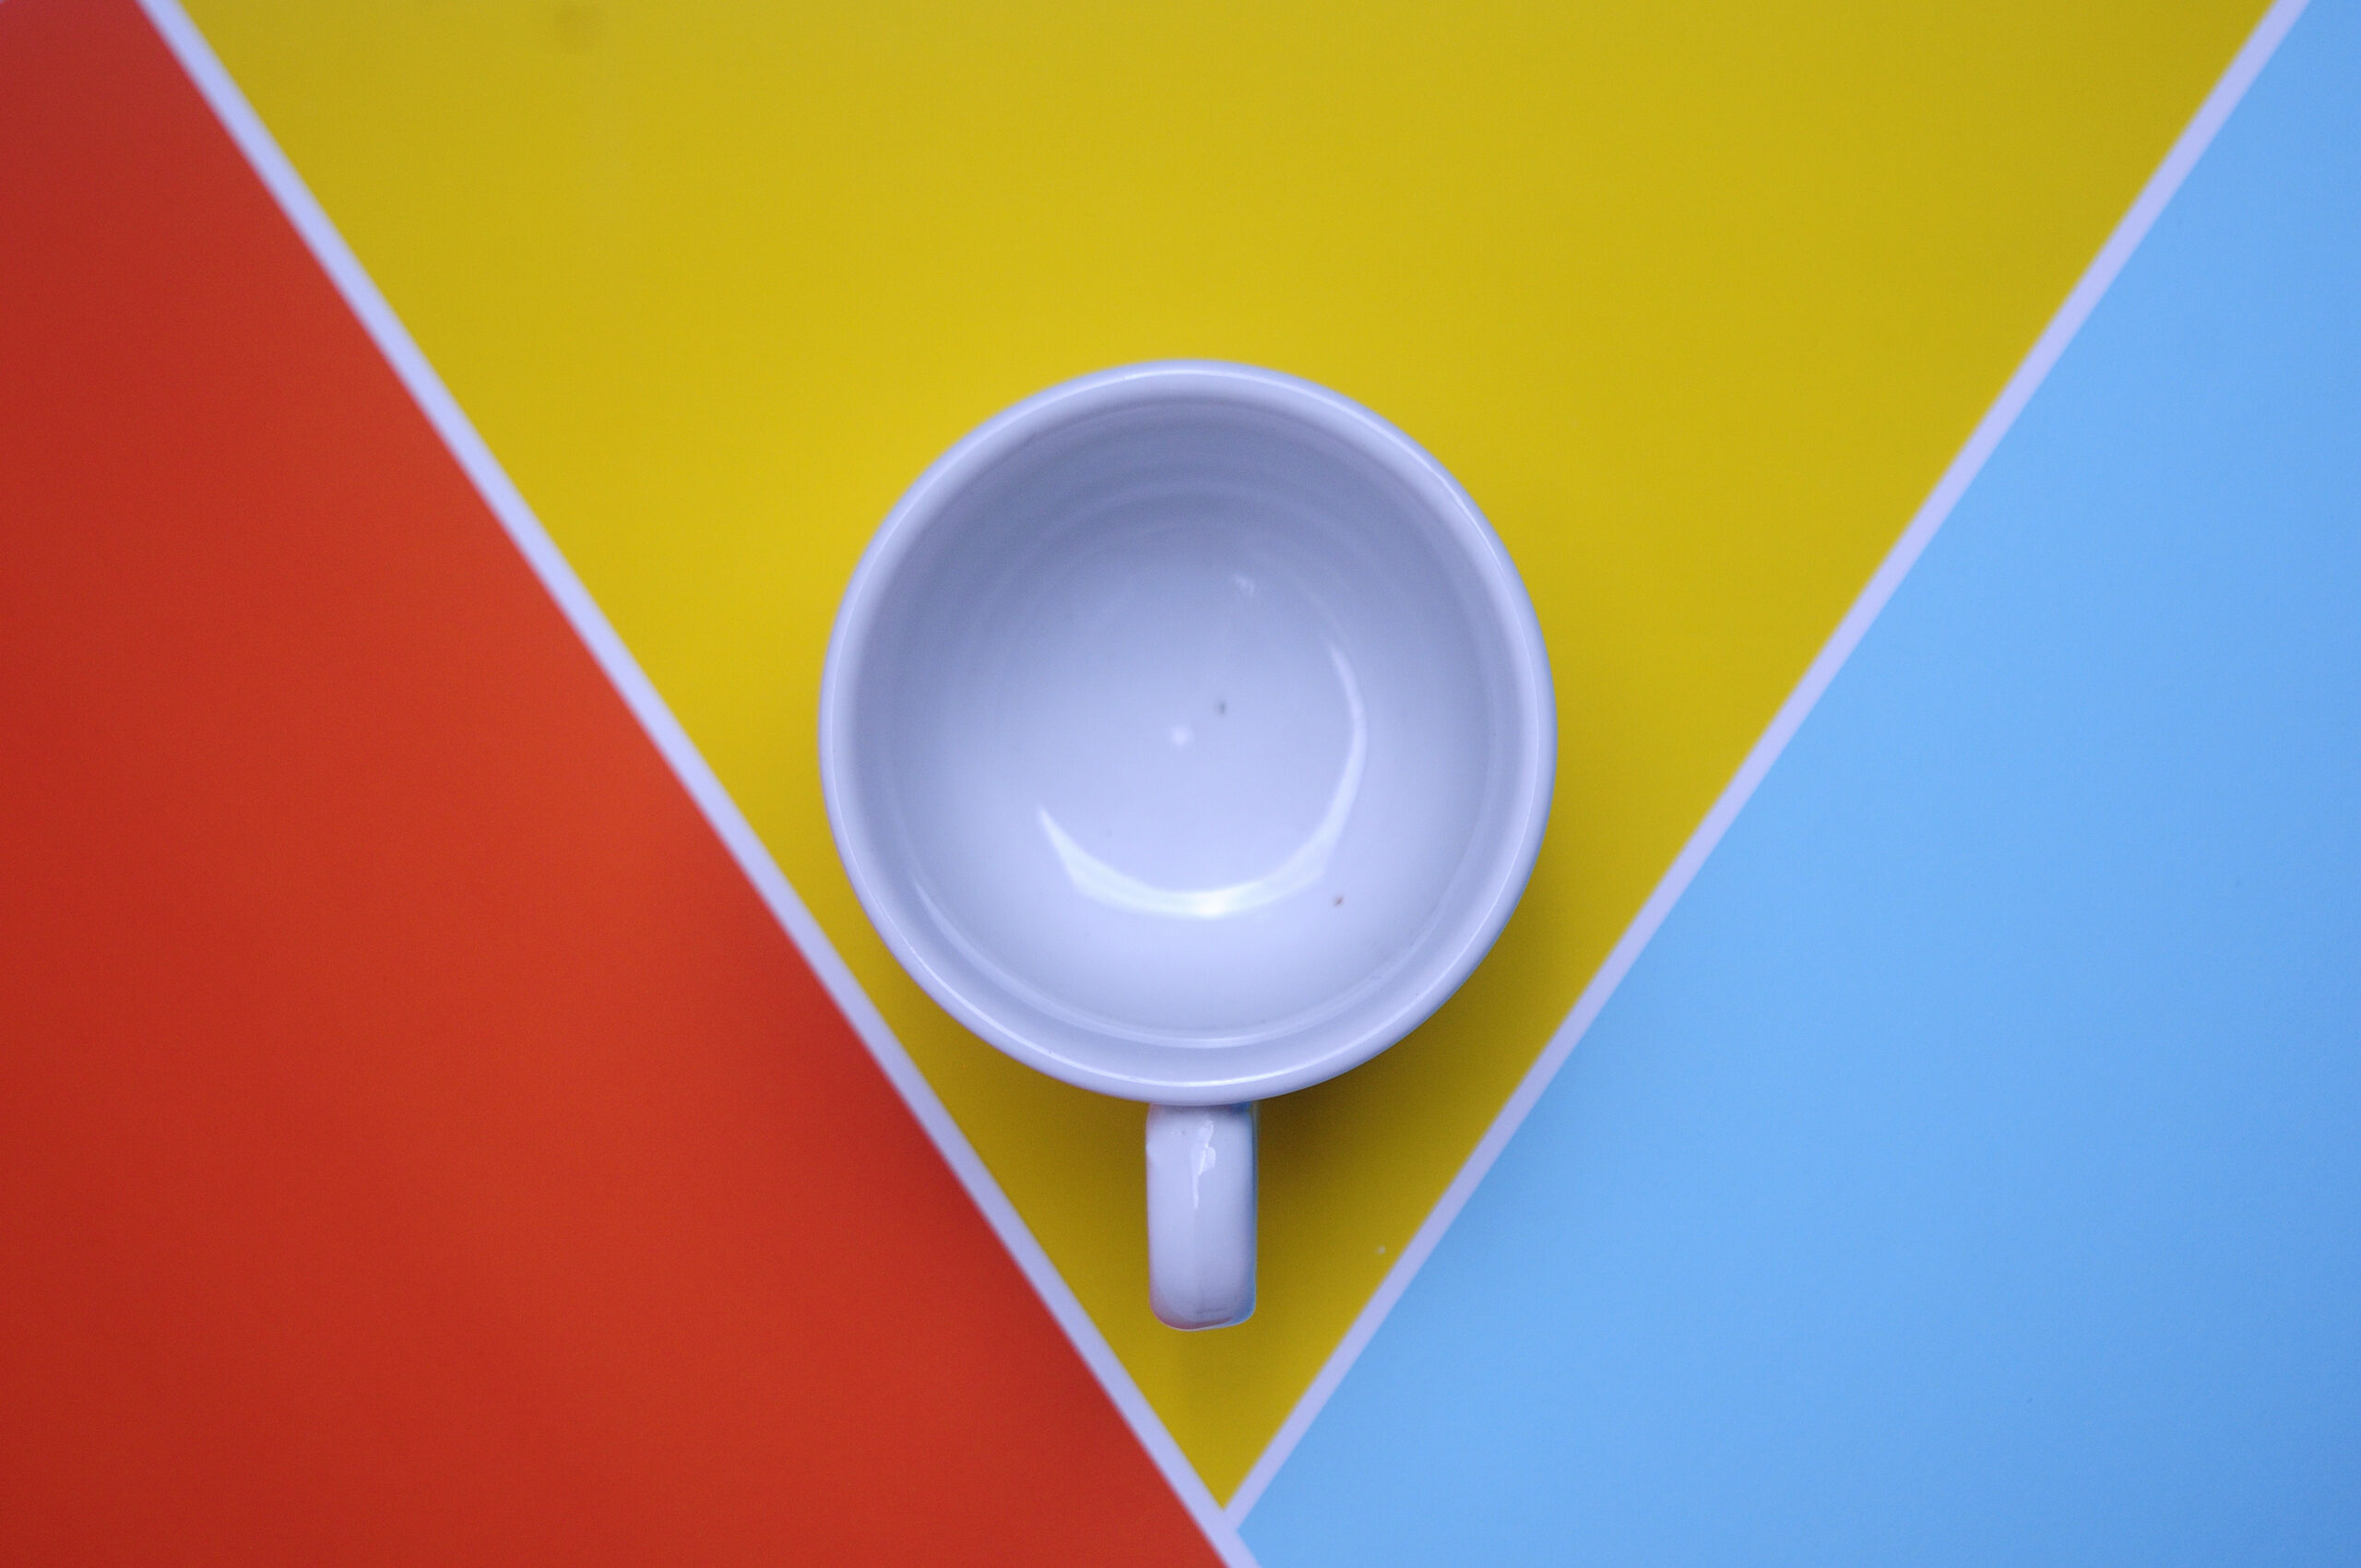 White ceramic cup